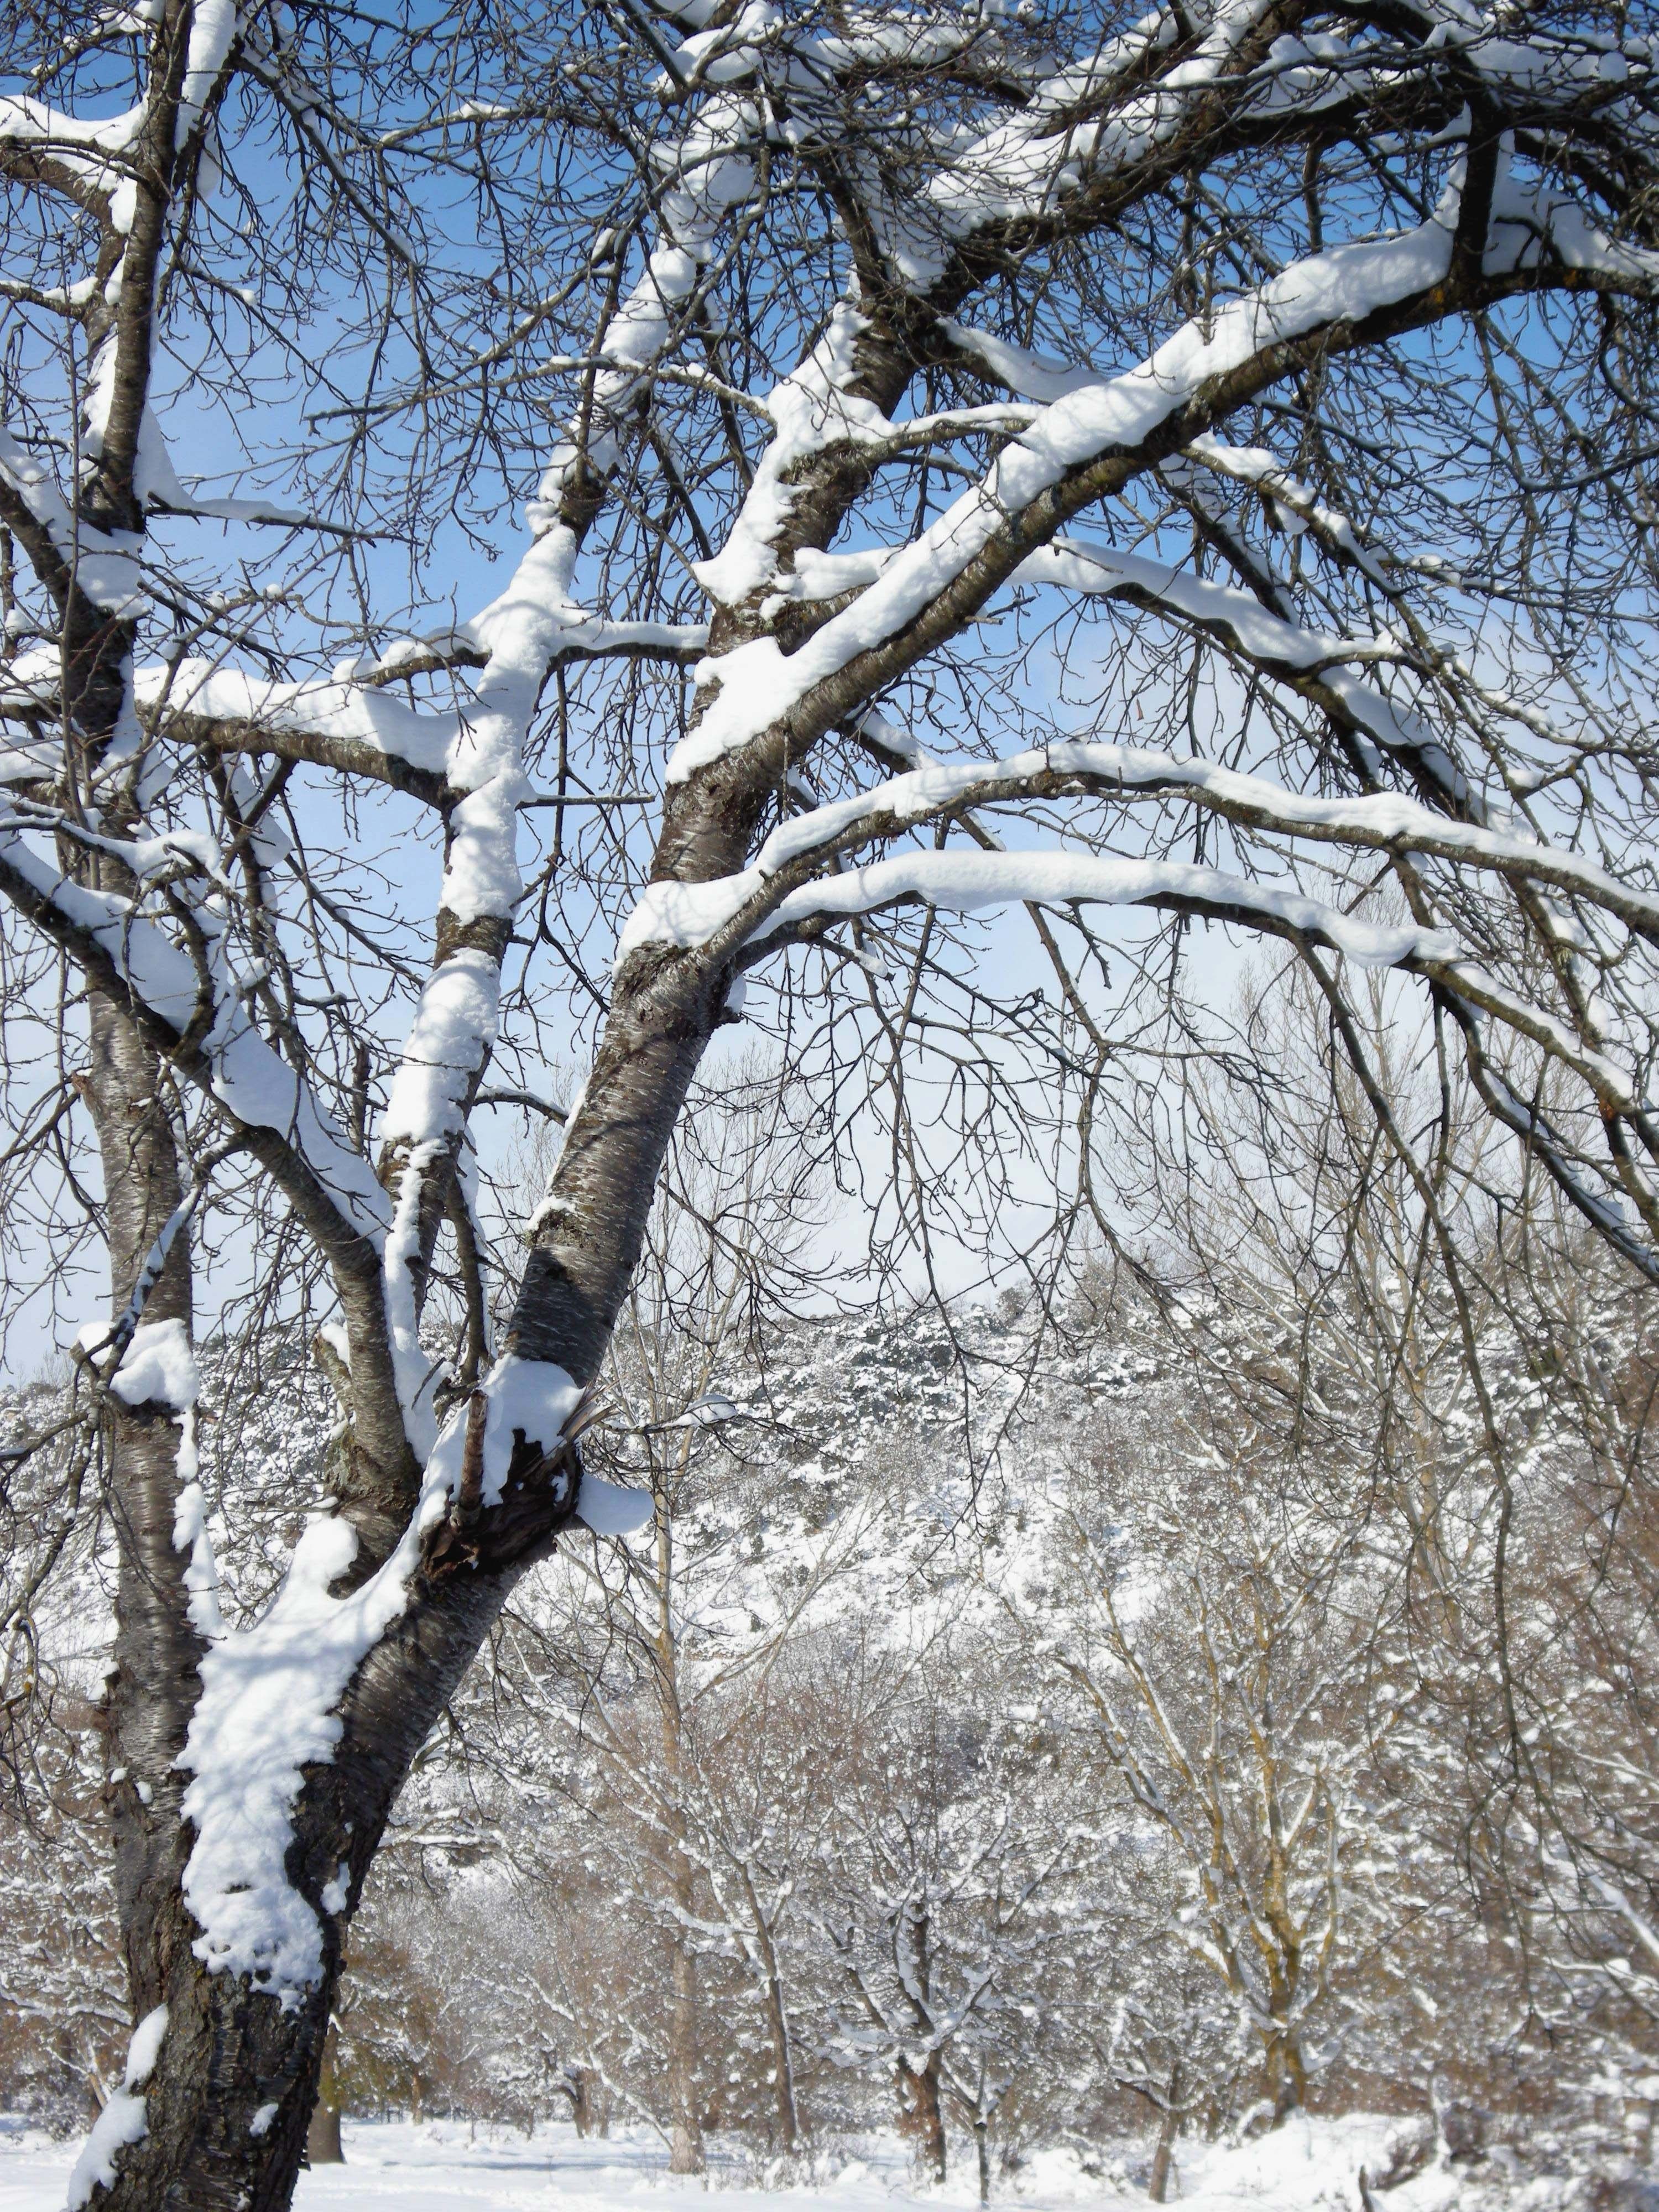 Protección Civil informa de nevadas en zonas de montaña de seis provincias de la Comunidad mañana y el sábado